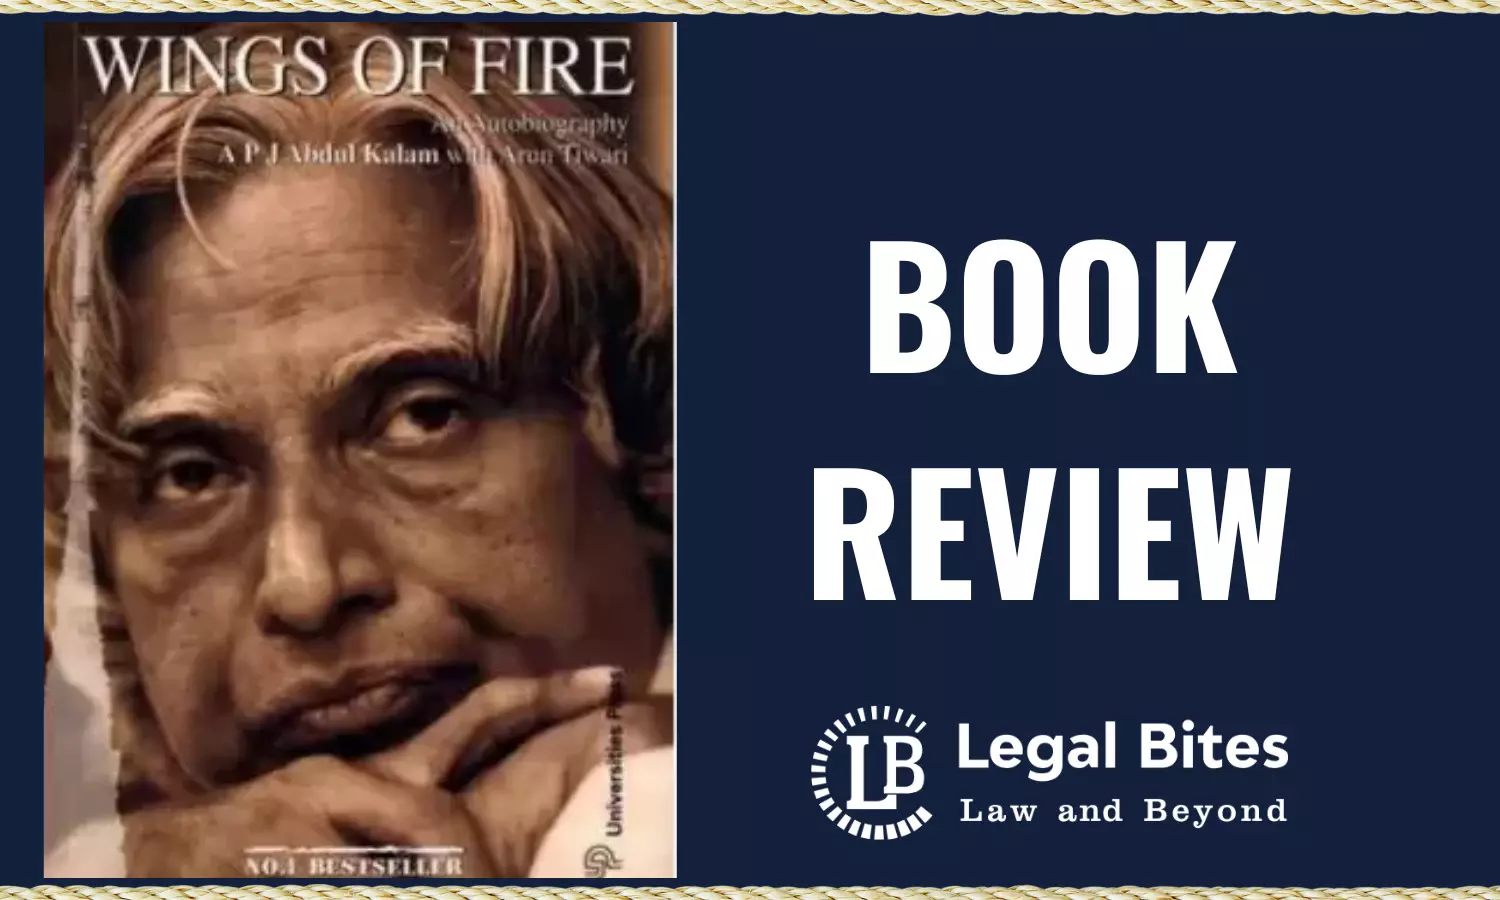 Book Review: Wings of Fire | Dr A.P.J. Abdul Kalam & Arun Tiwari